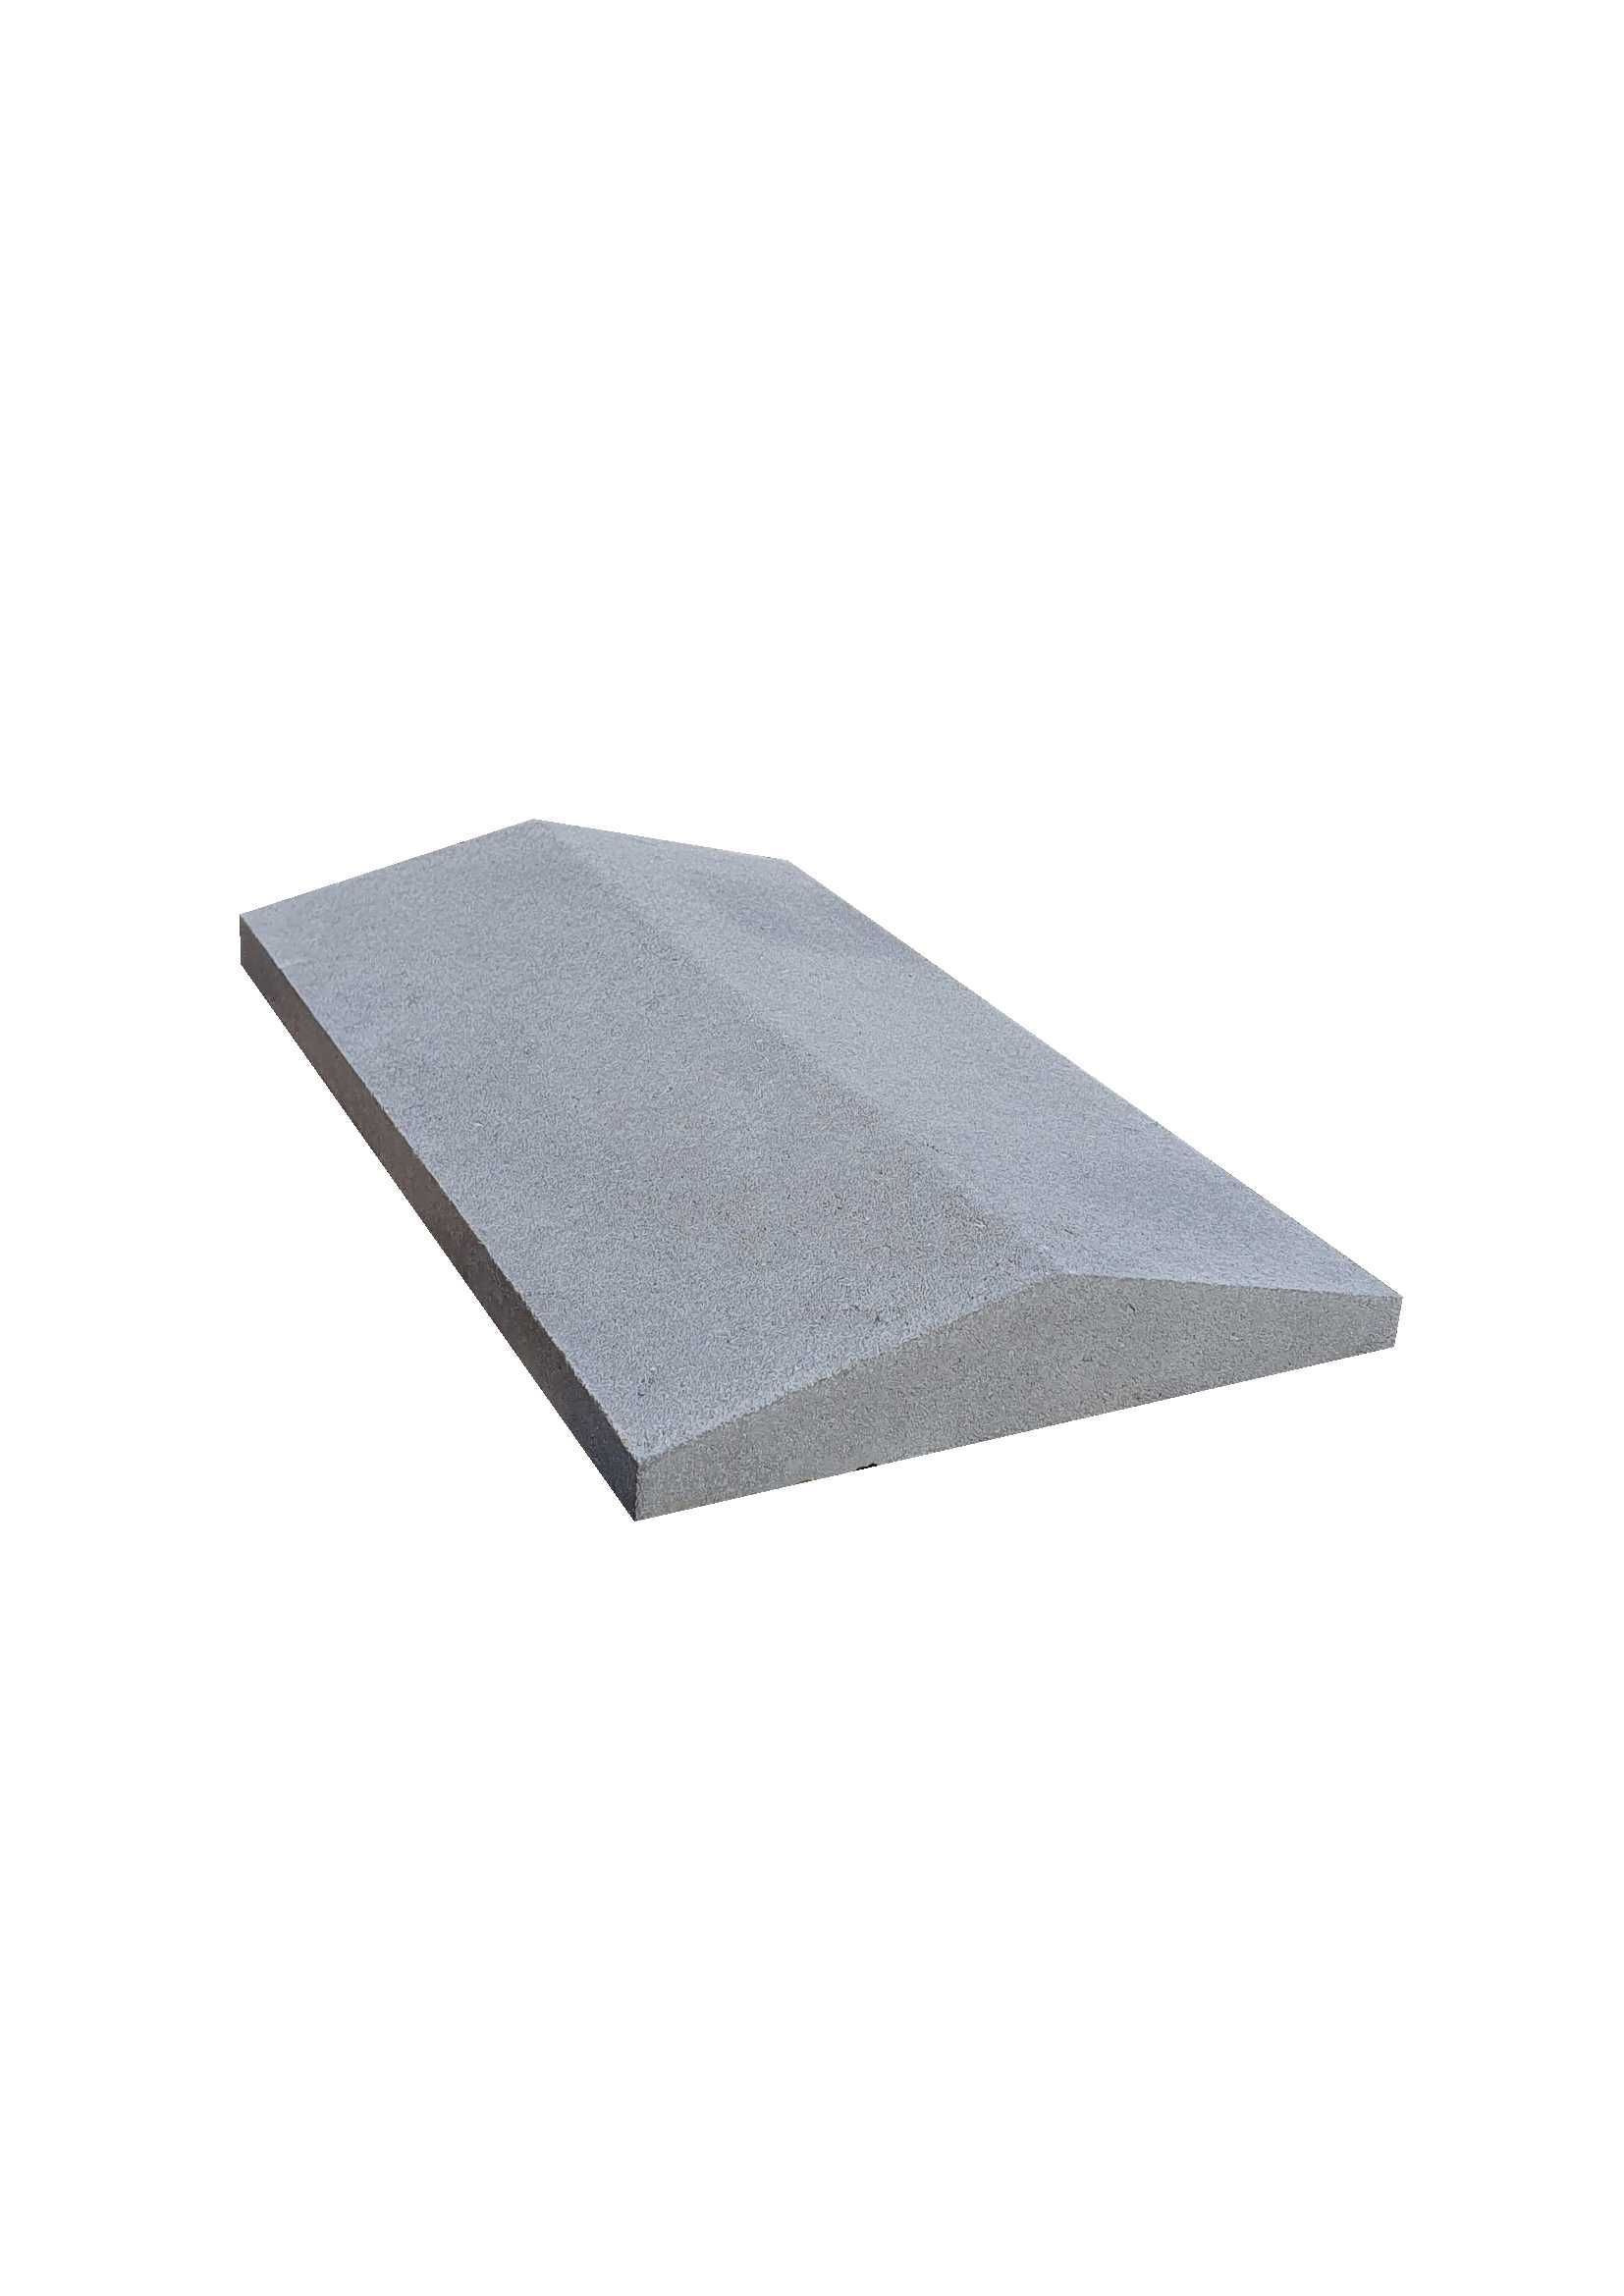 Daszek betonowy 30x50 dwuspadowy lub jednospadowy płaski na murki